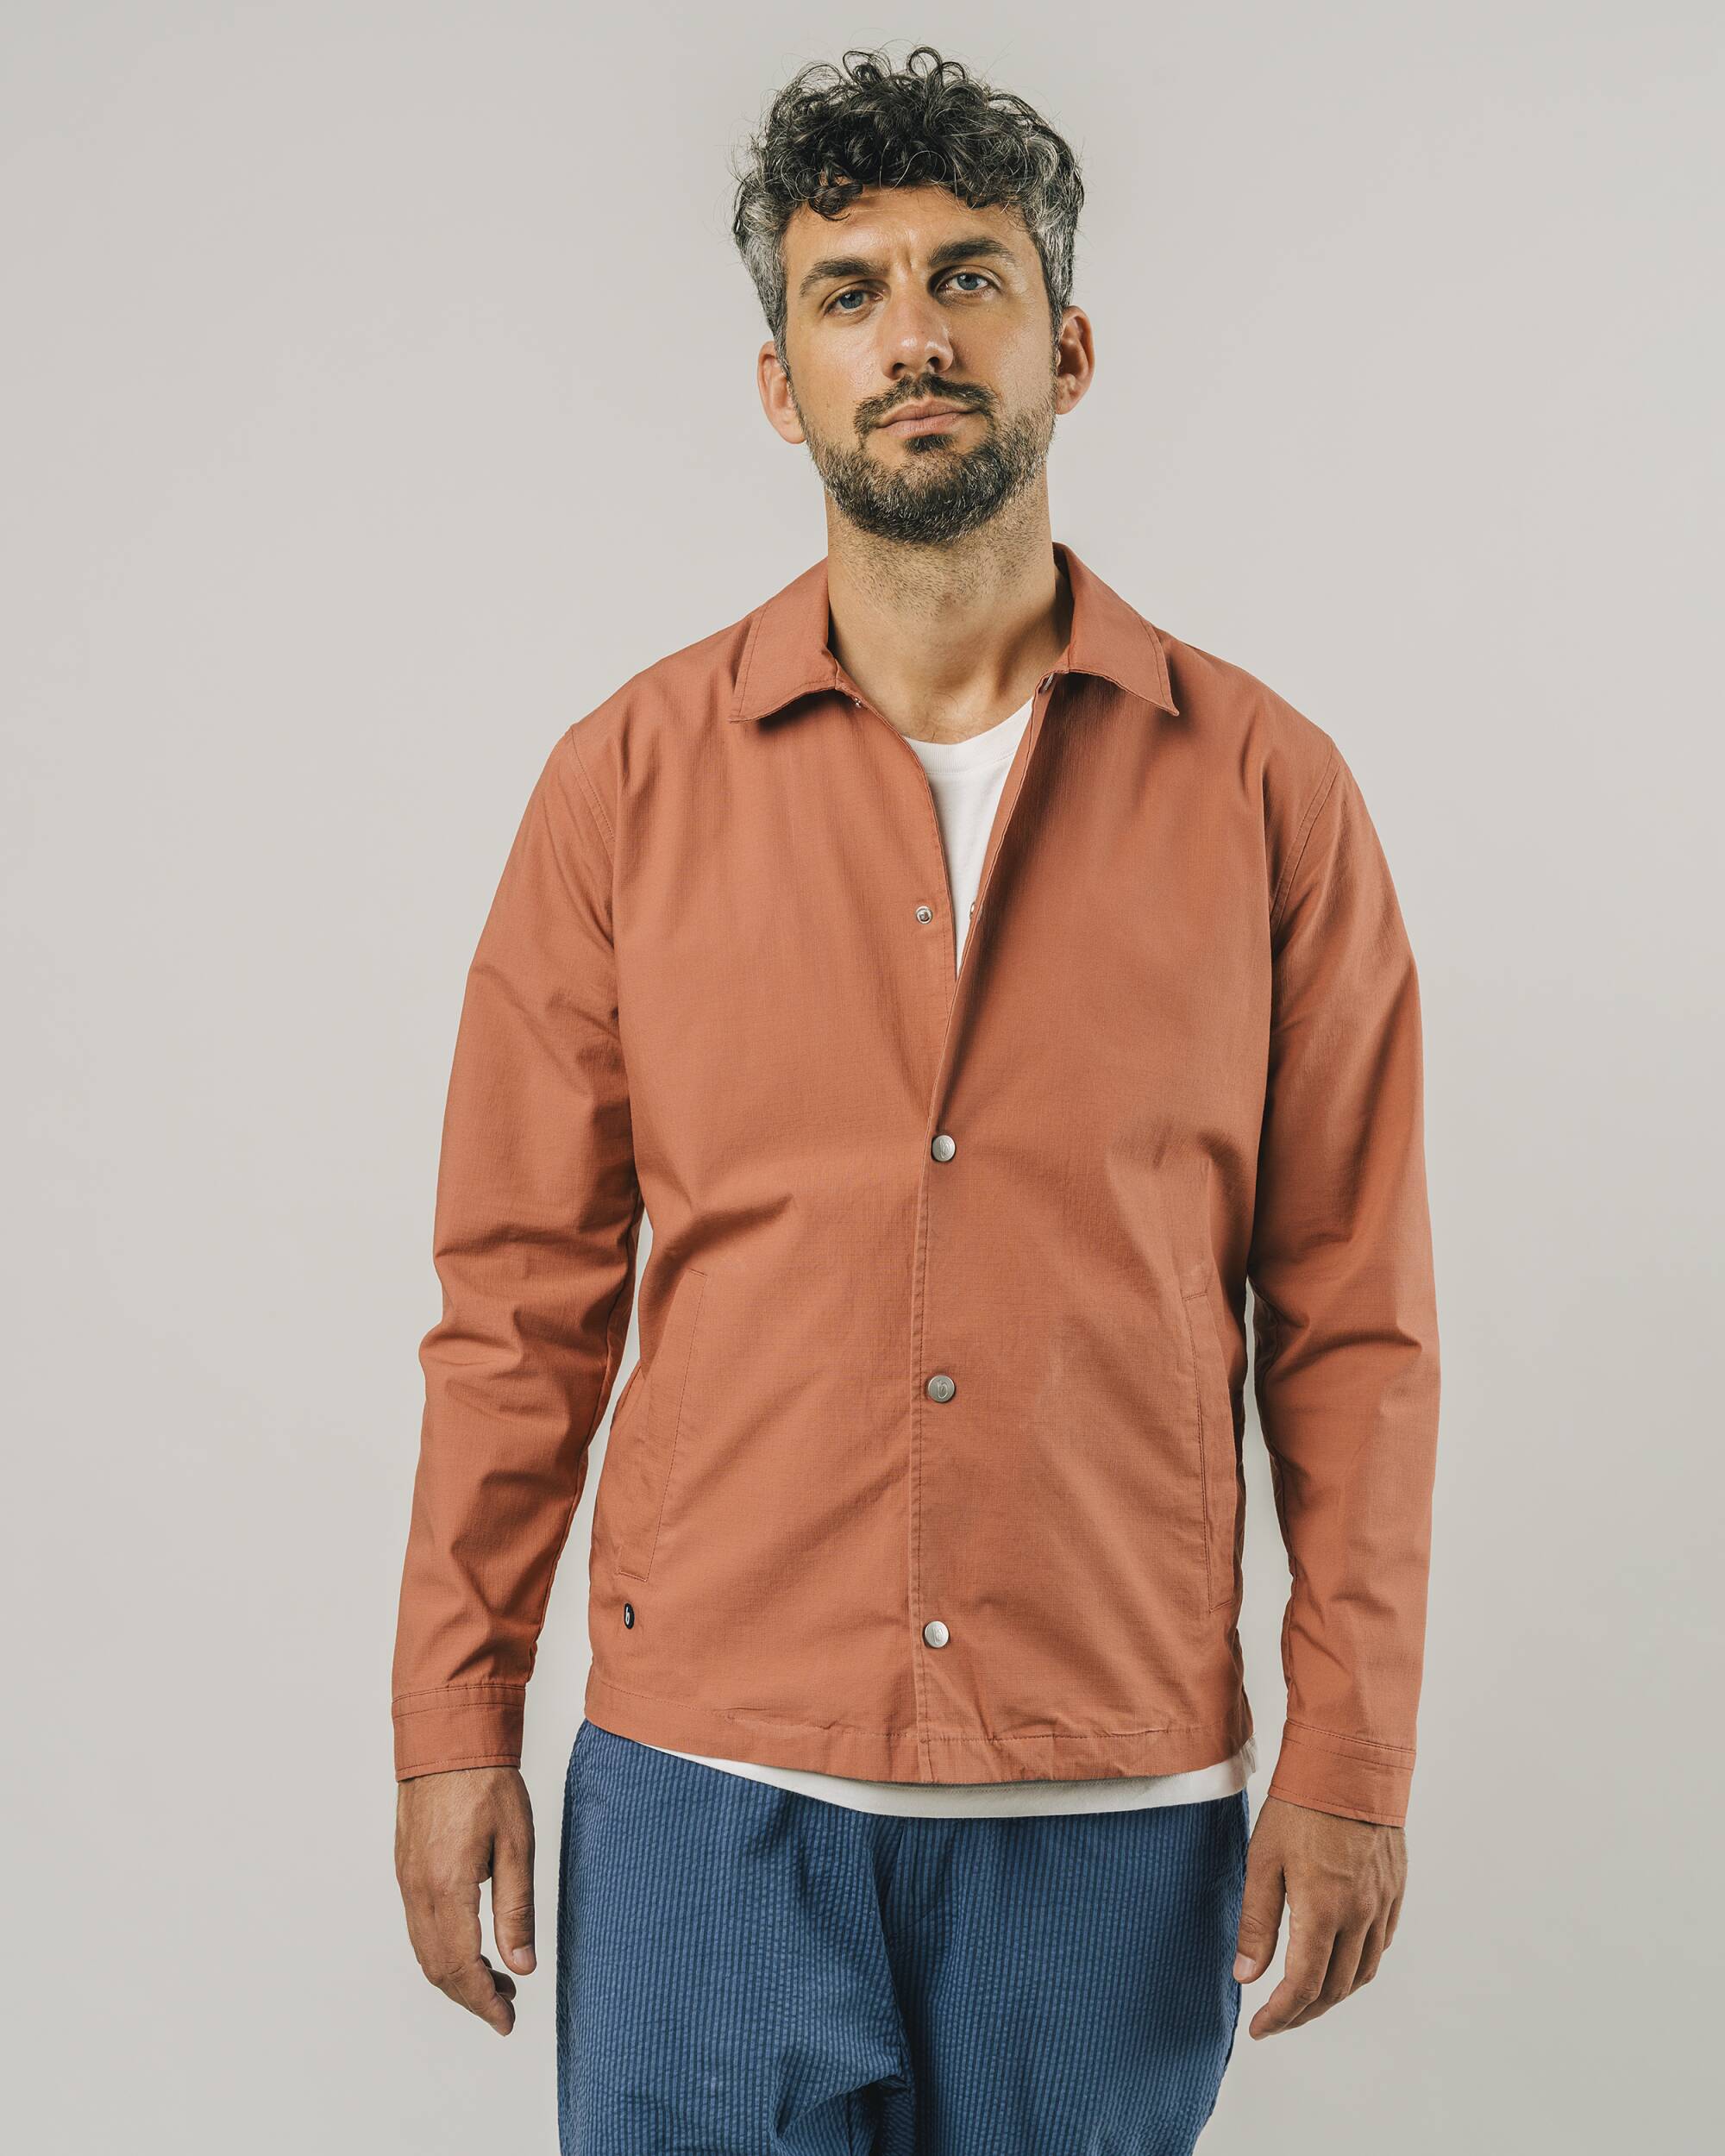 Veste ripstop en coton biologique orange de Brava Fabrics